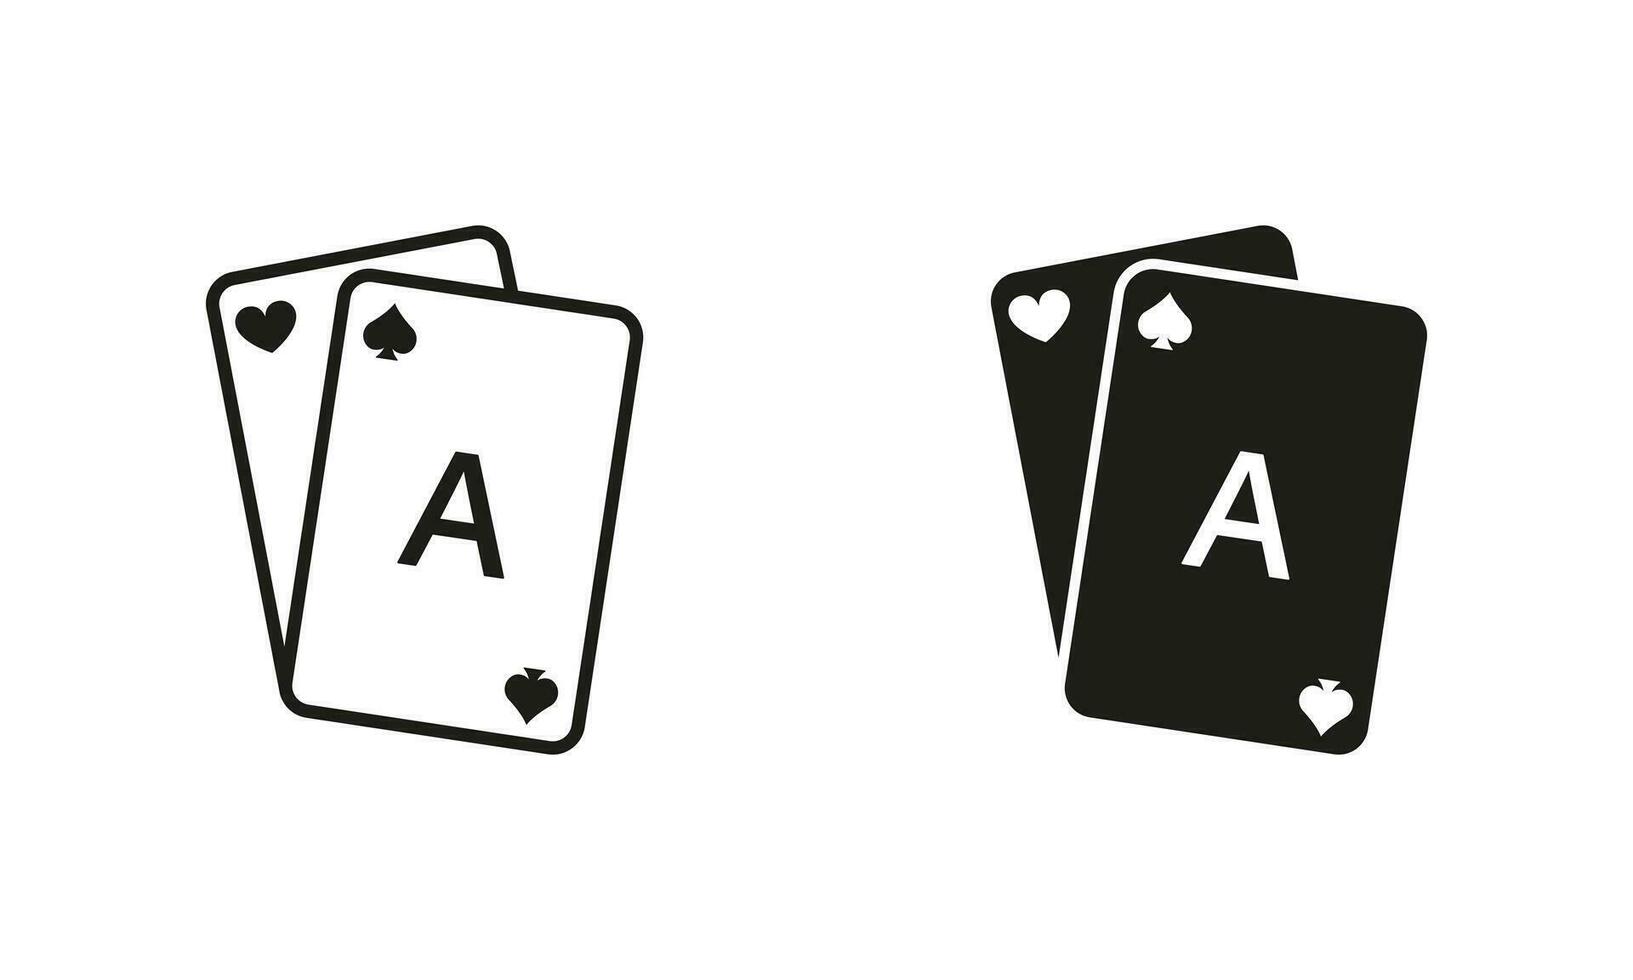 jugar tarjeta símbolo recopilación. jugando puente, negro Jacobo, real póker pictograma. juego tarjeta cubierta línea y silueta negro icono colocar. juego adiccion signo. aislado vector ilustración.